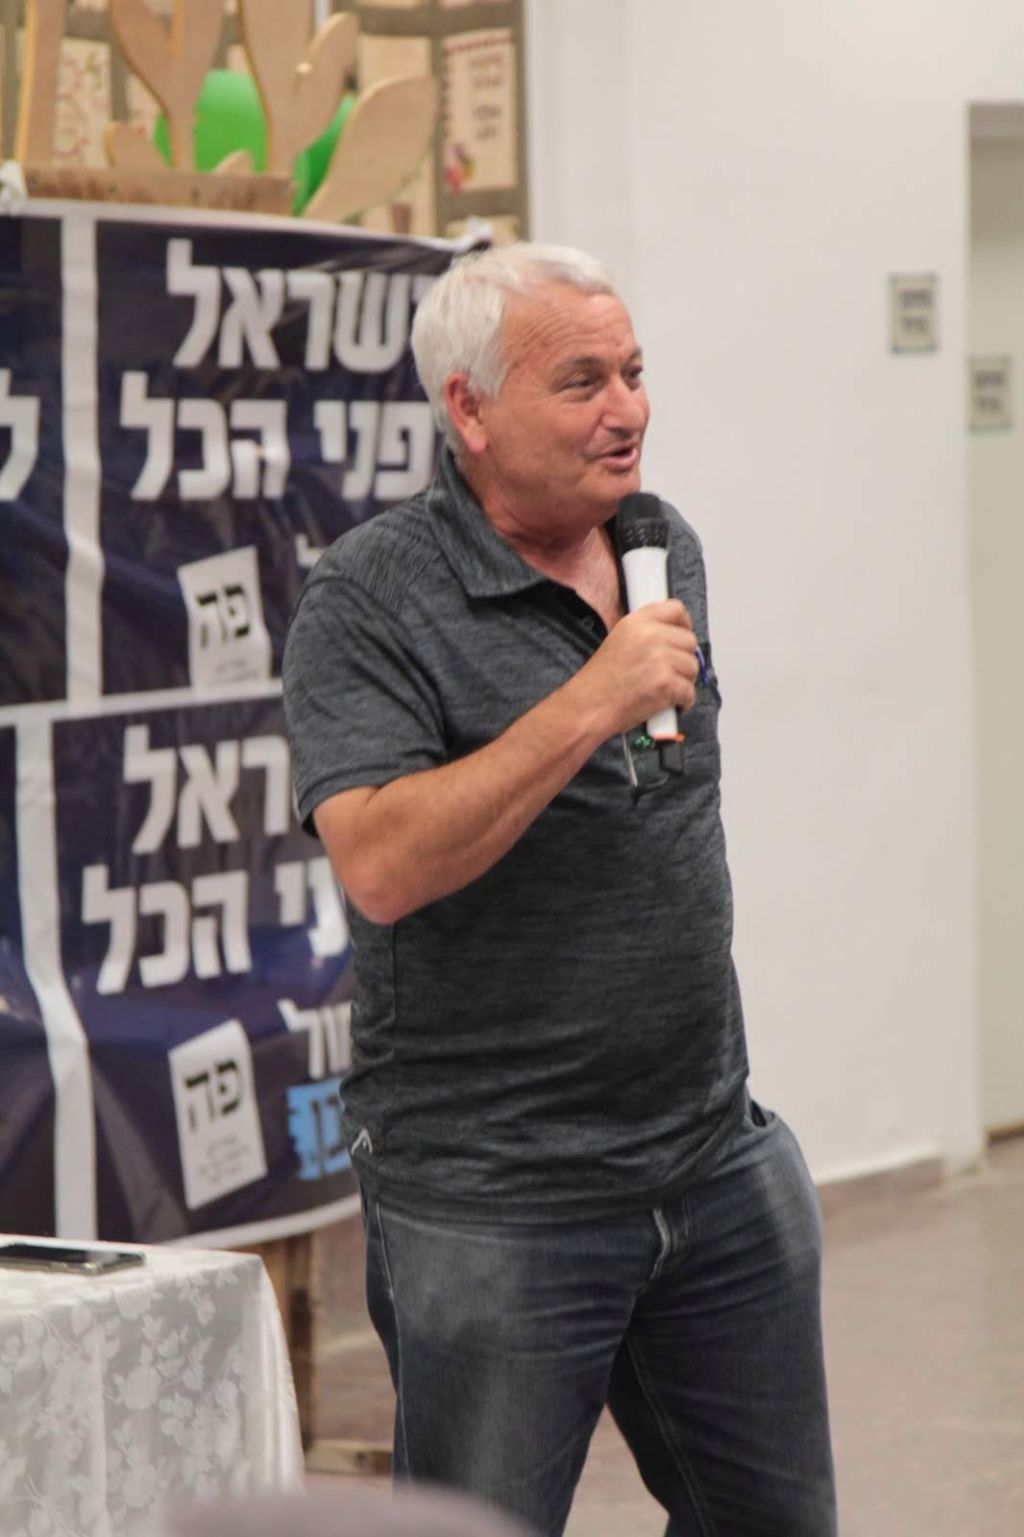 En campaña. "Israel ante todo", dice el cartel de fondo, el lema de Kajol Lavan